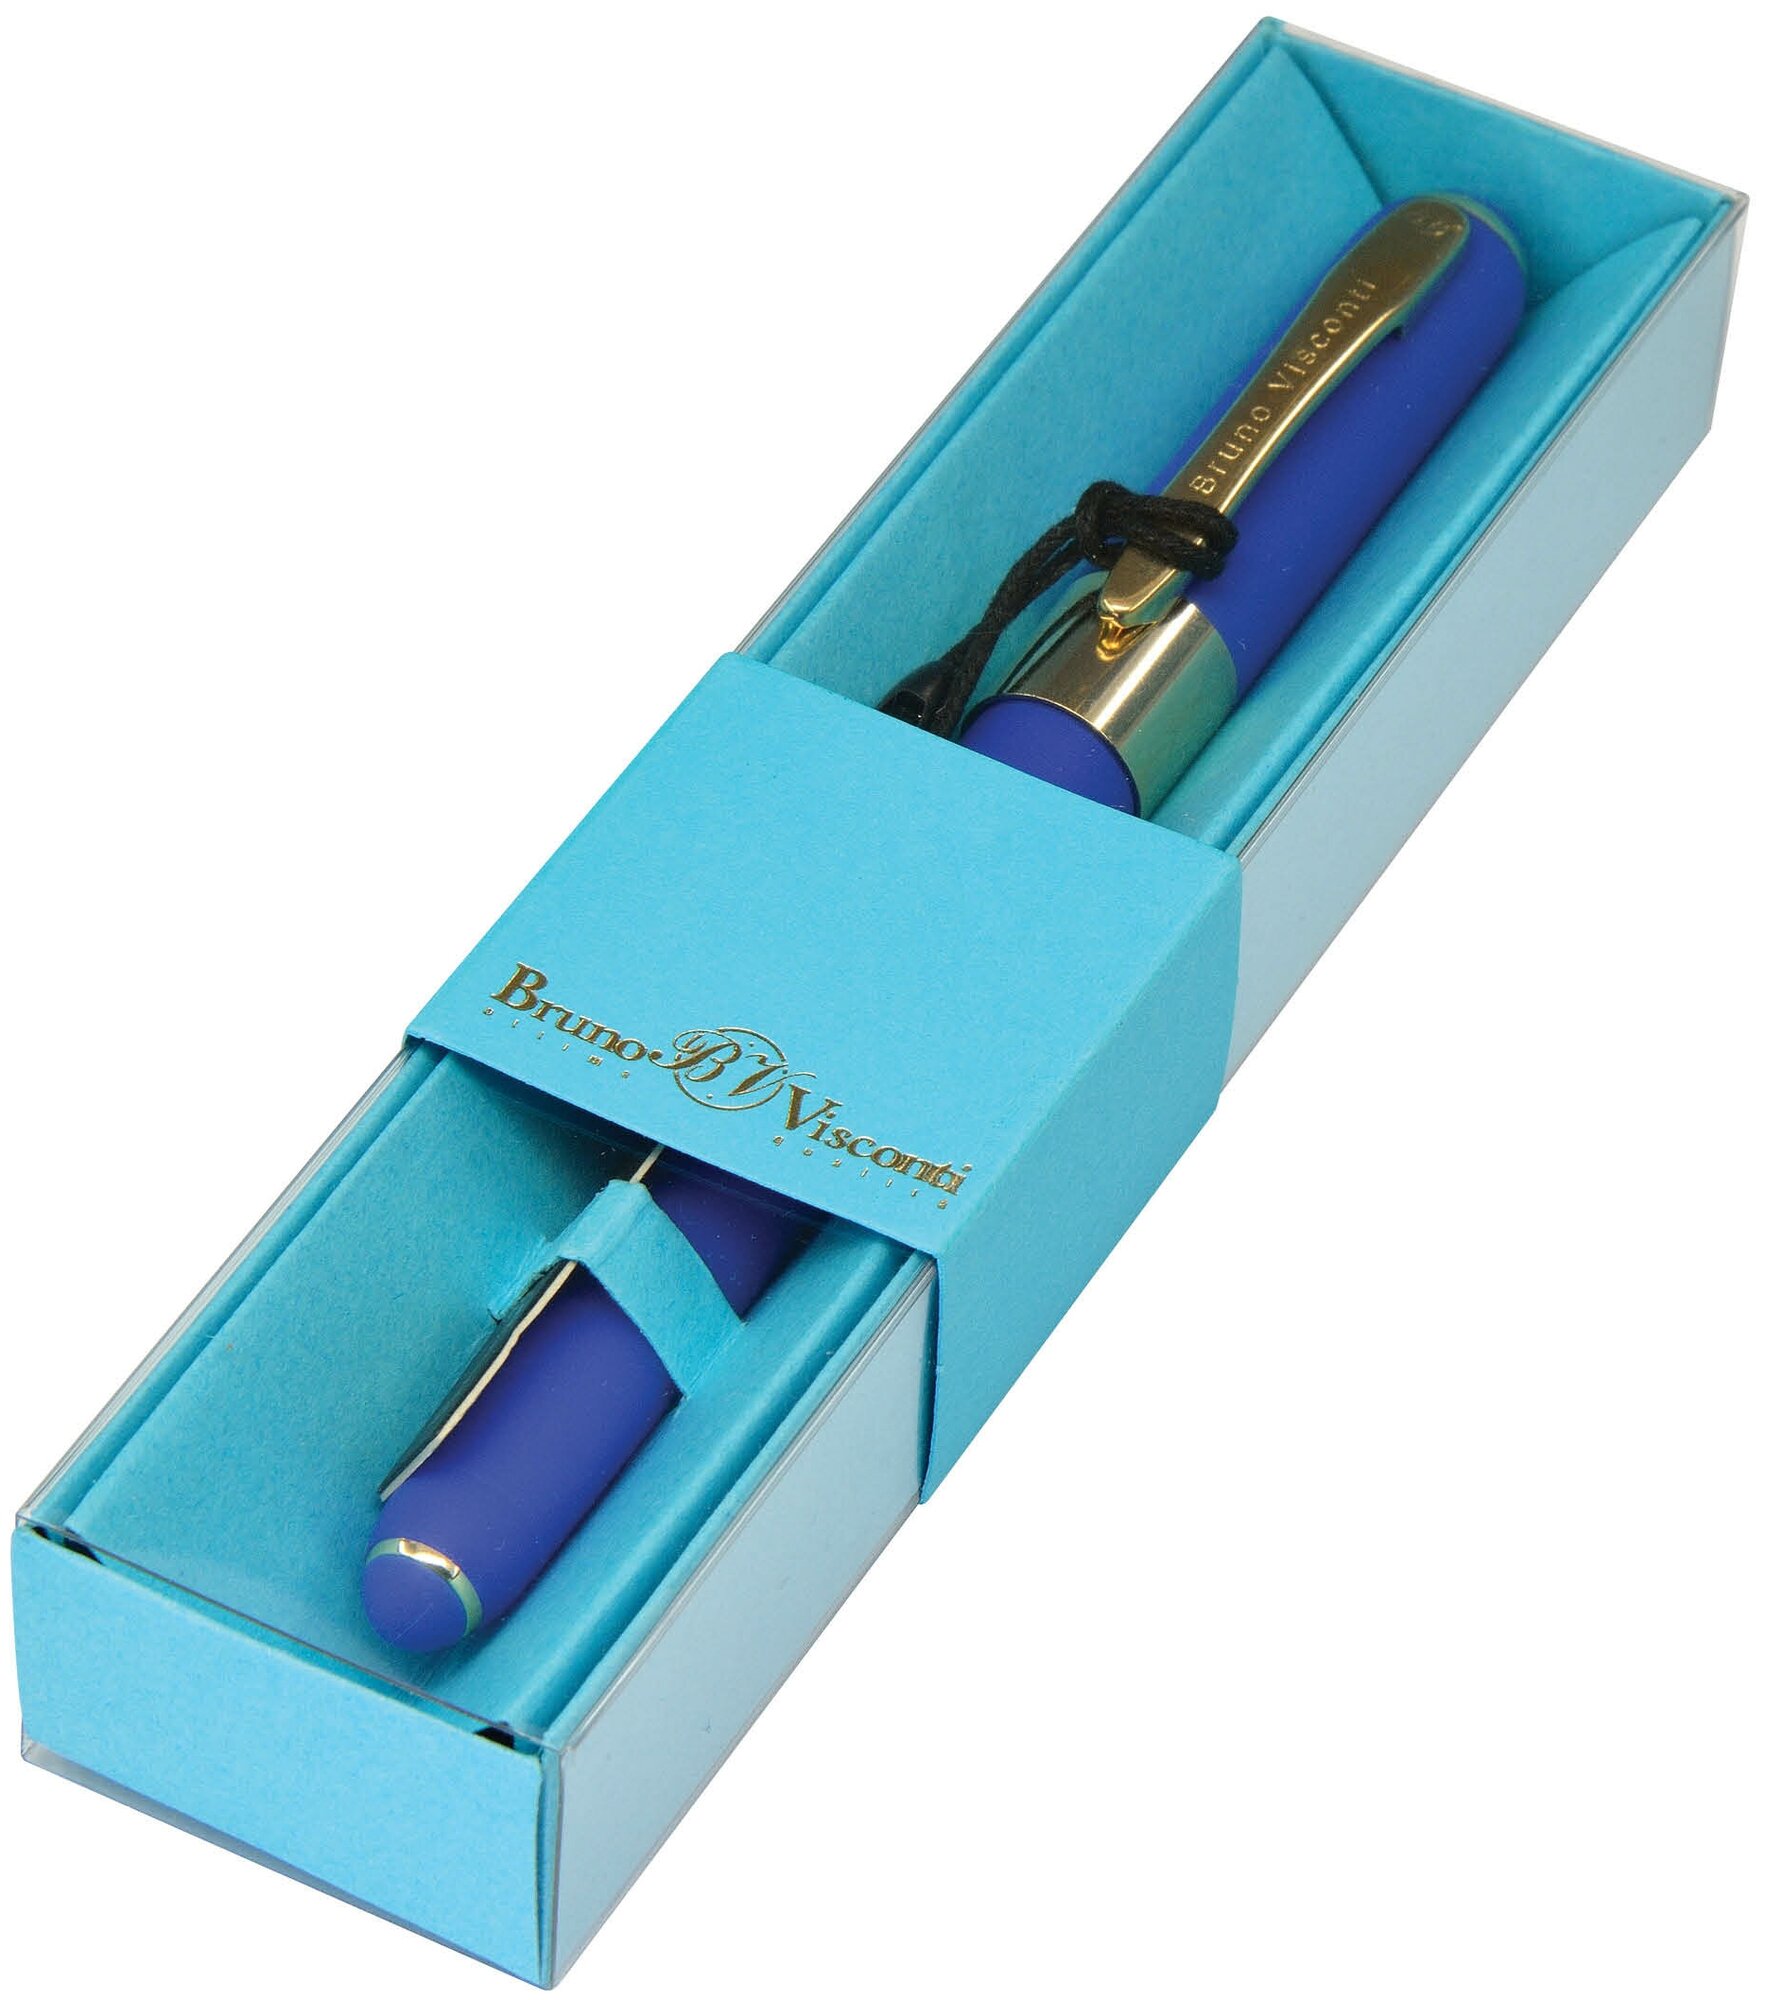 Ручка шариковая автоматическая BrunoVisconti, 0,5 мм, синяя, в футляре, Monaco (синий корпус), Арт. 20-0125/087